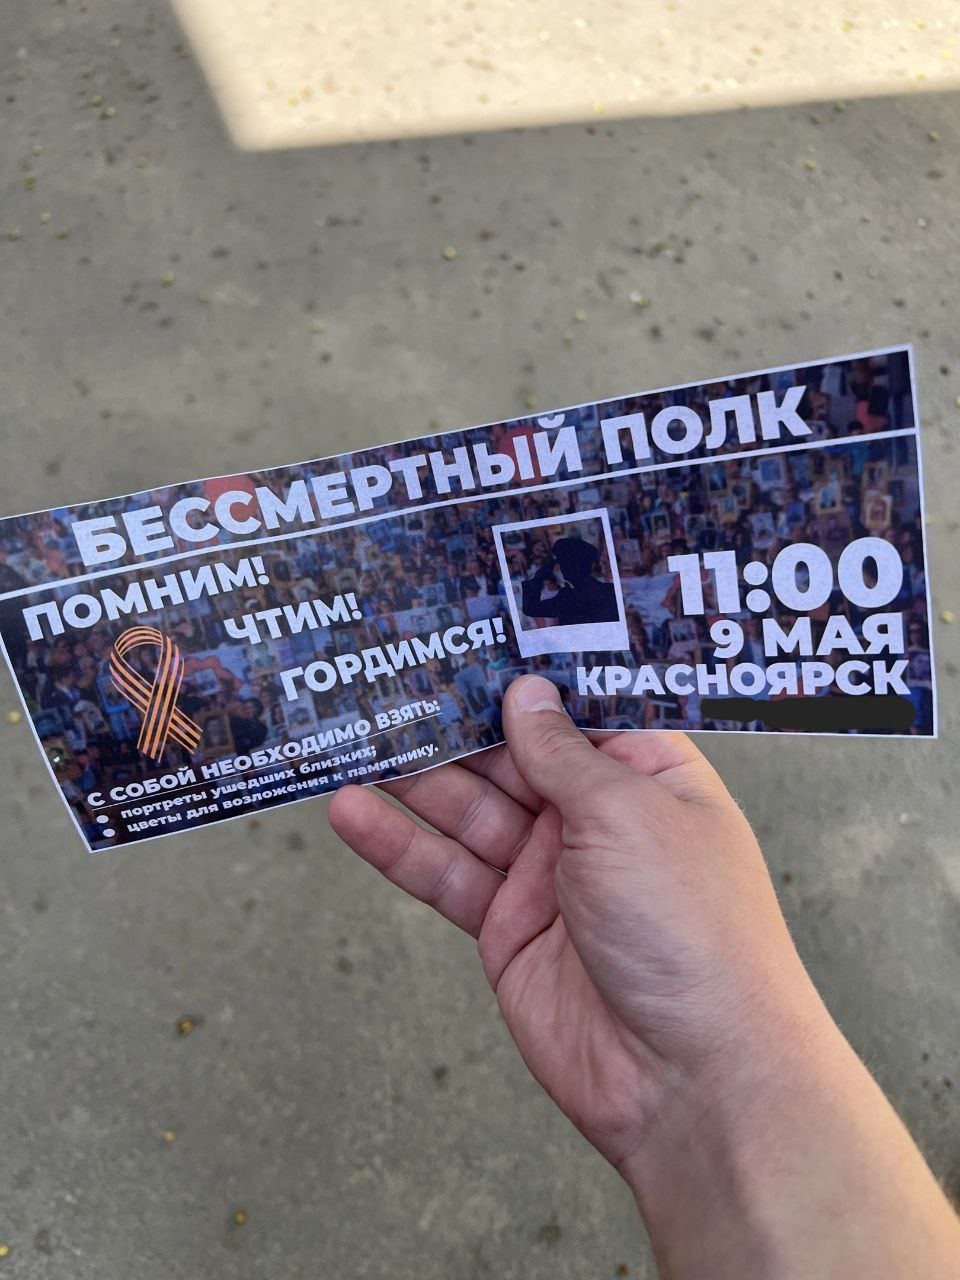 В Красноярске раздают фейковые приглашения на акцию «Бессмертный полк»